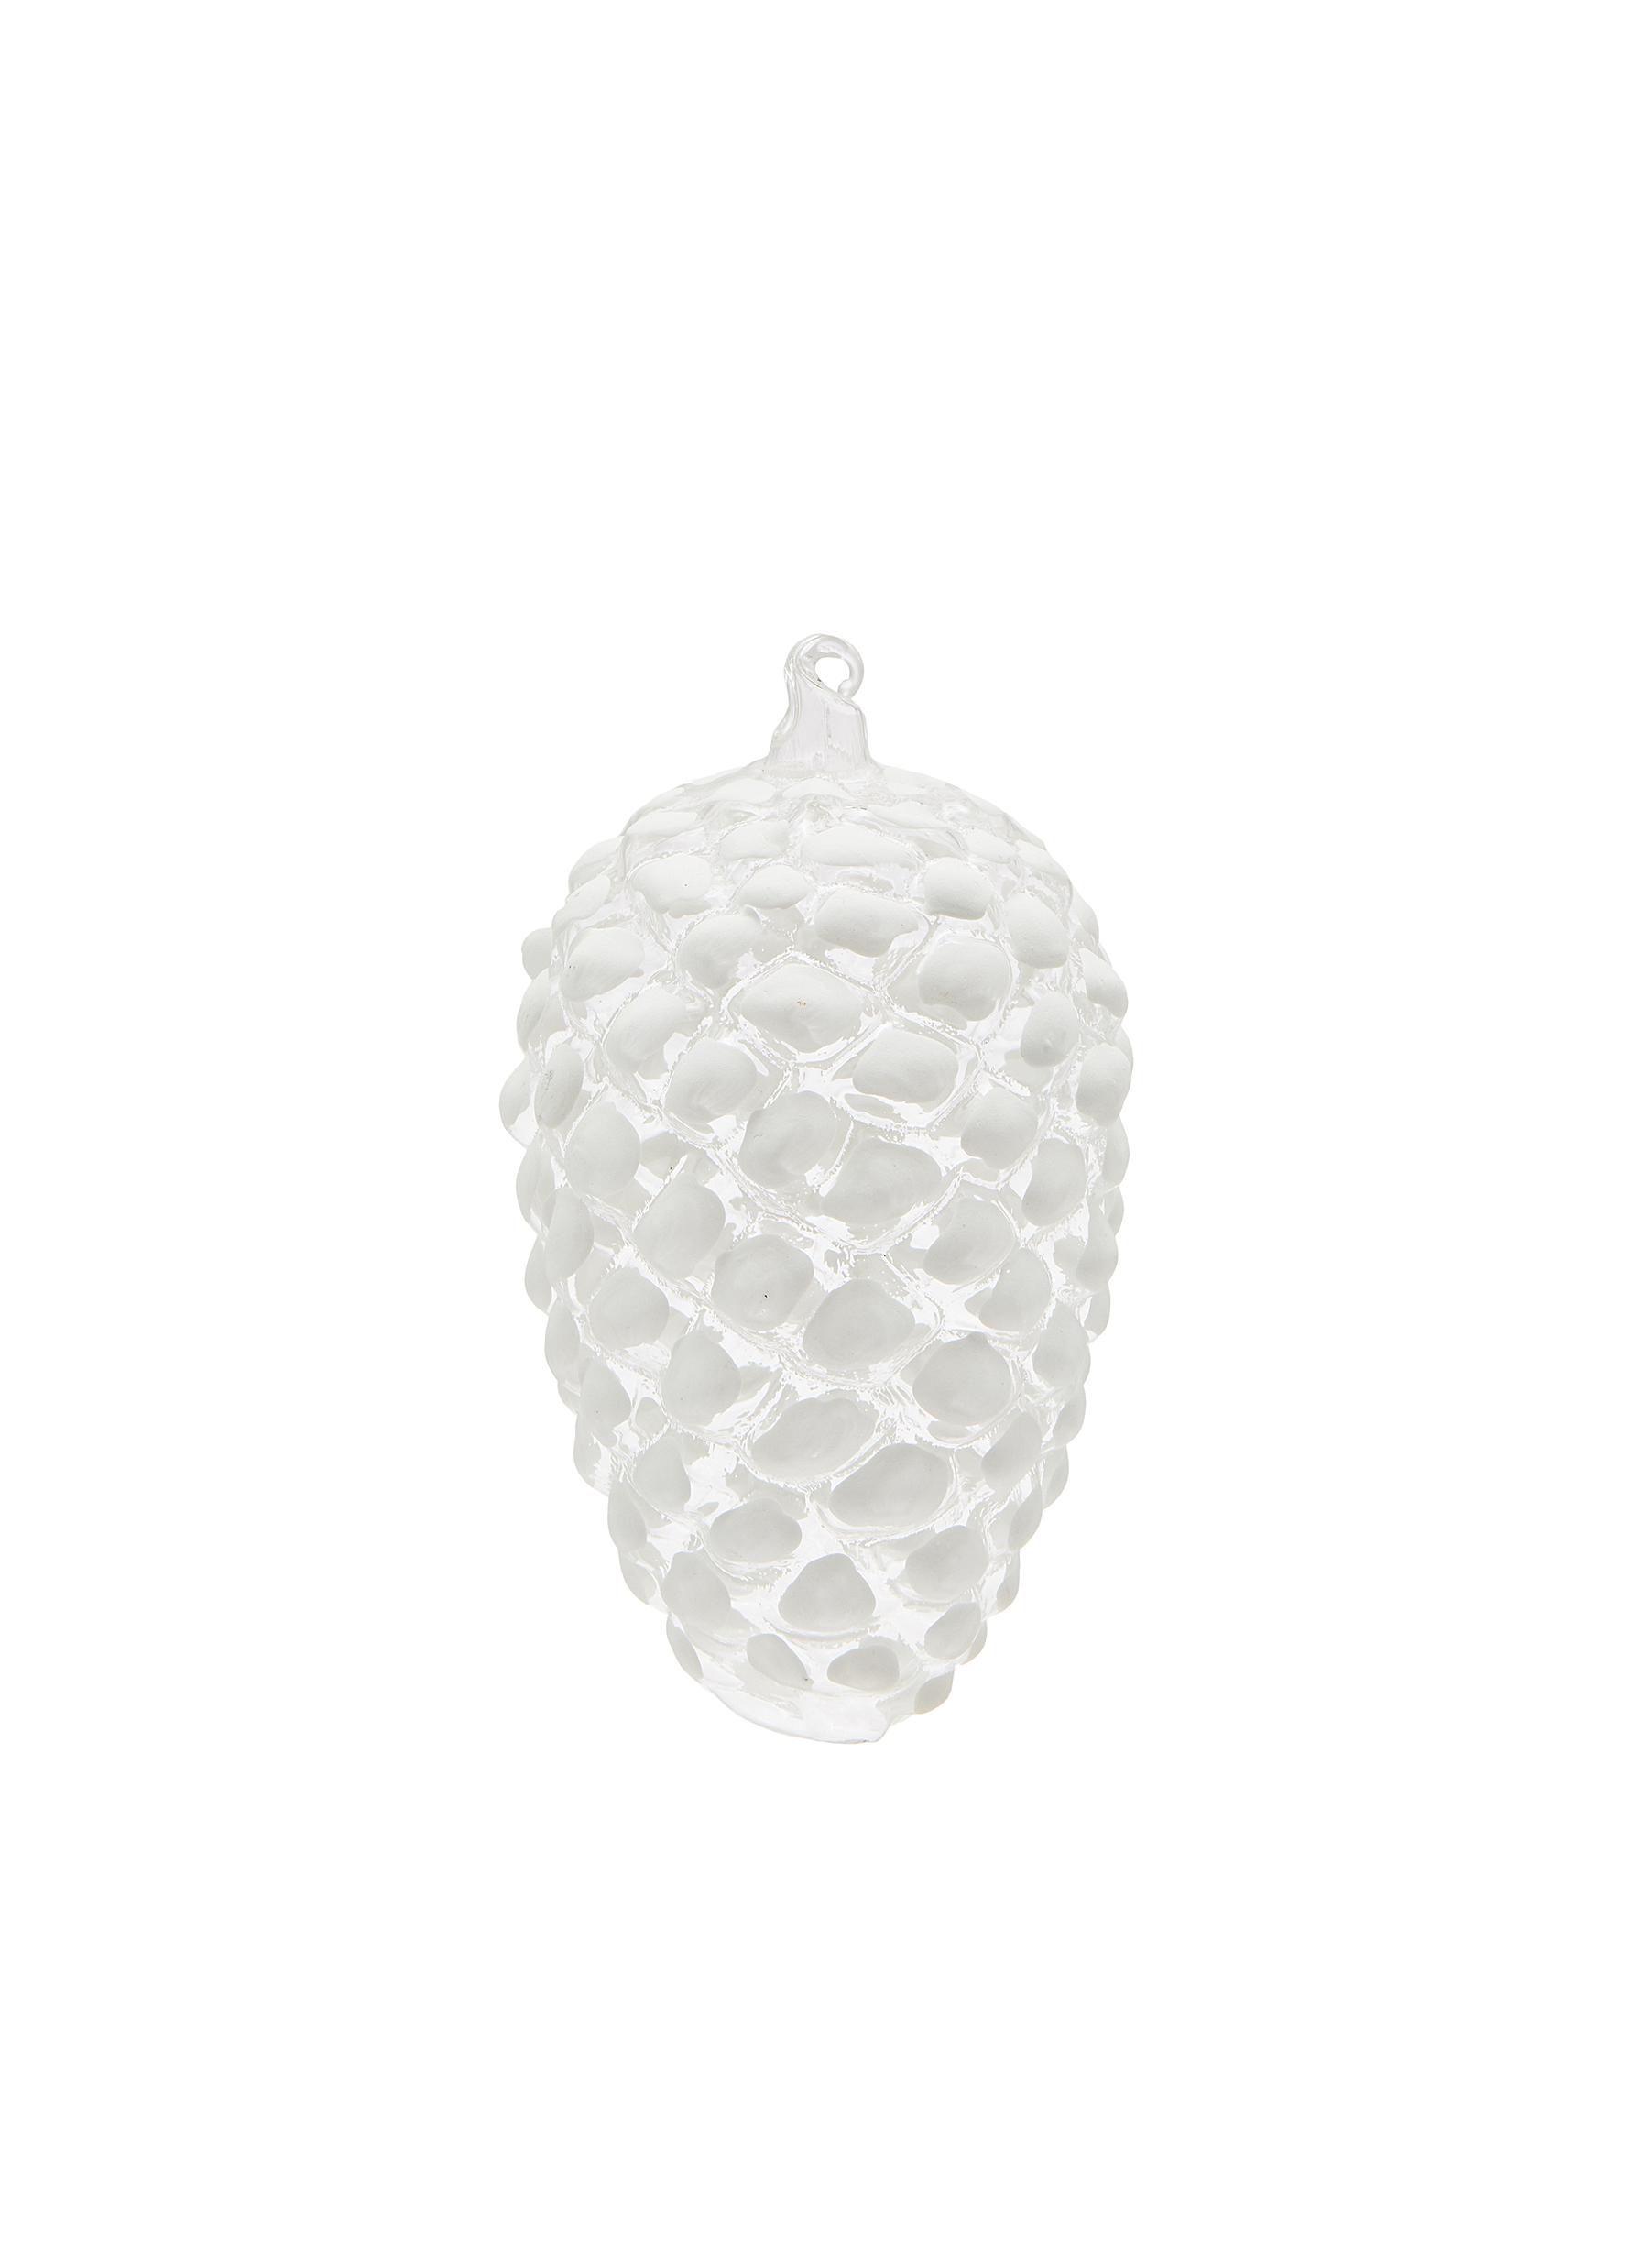 Glass Pine Cone Ornament - White